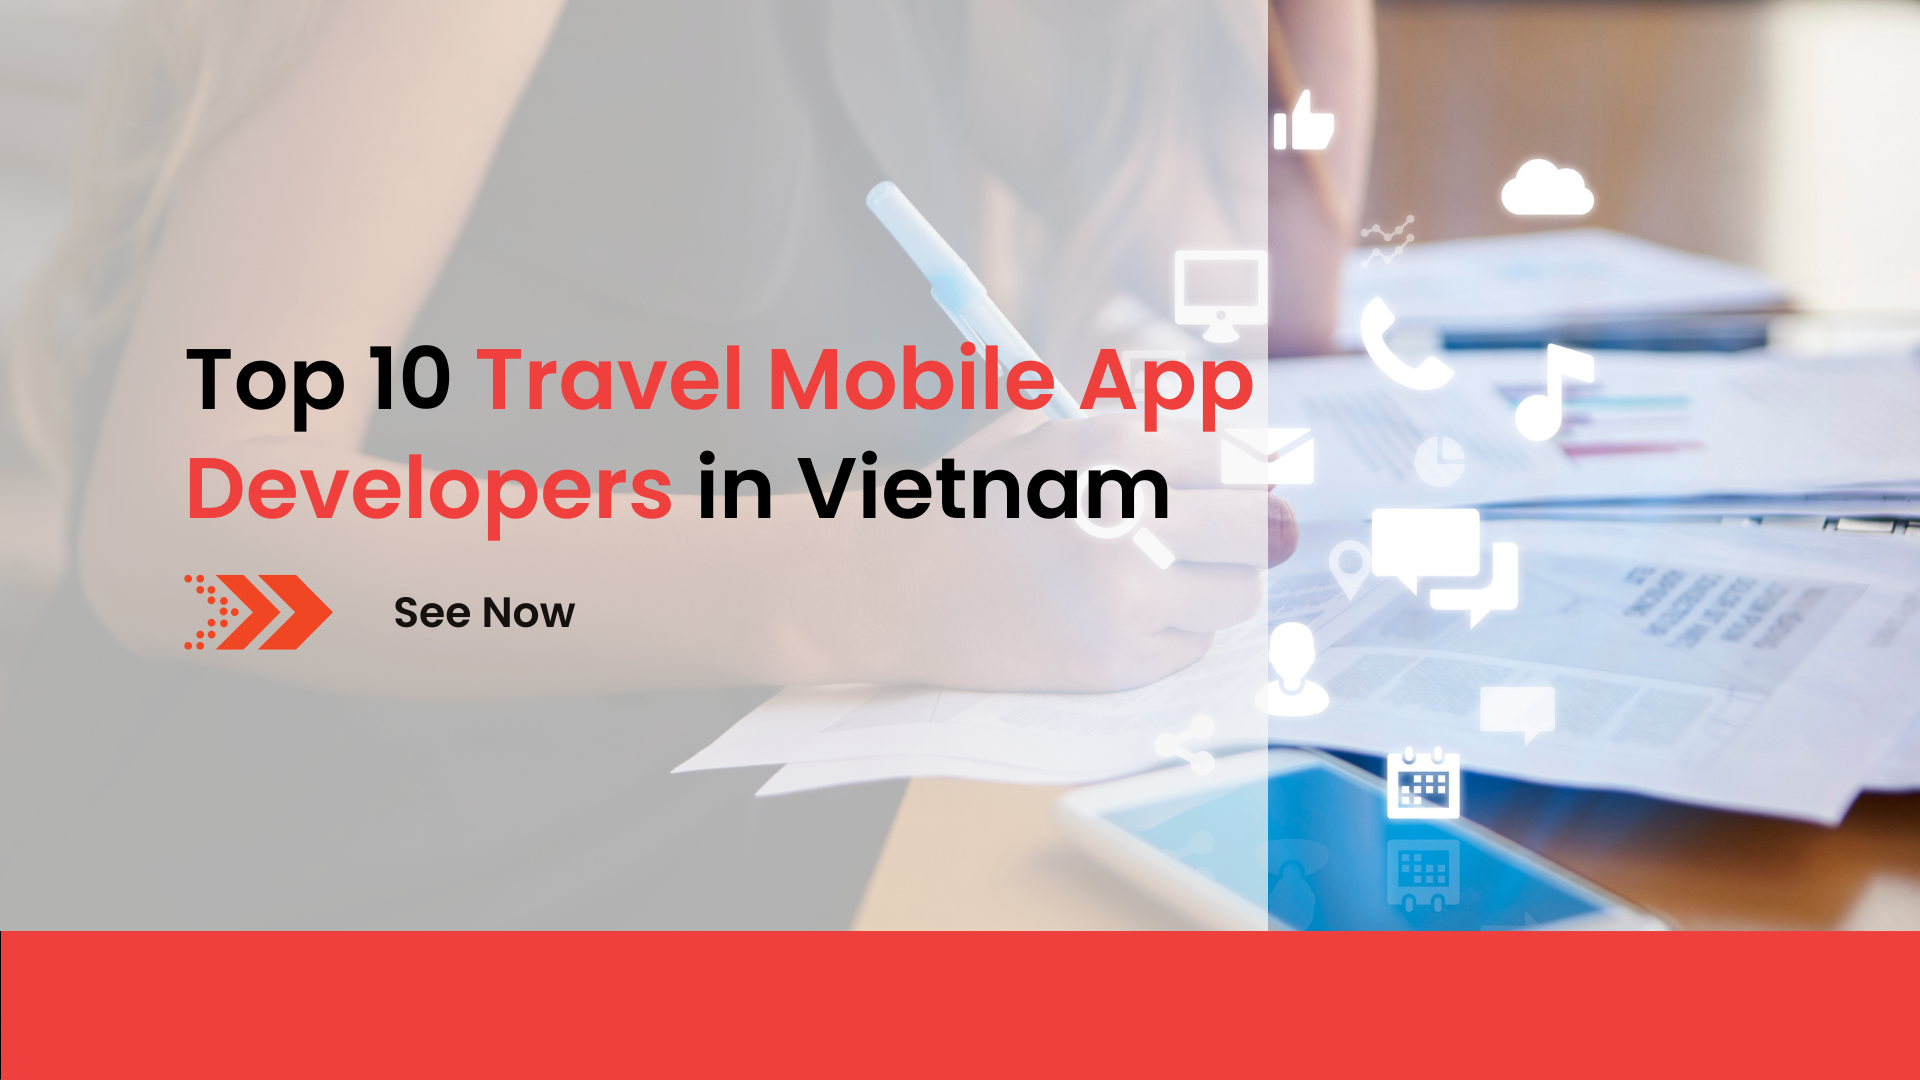 Top 10 Travel Mobile App Developers in Vietnam1